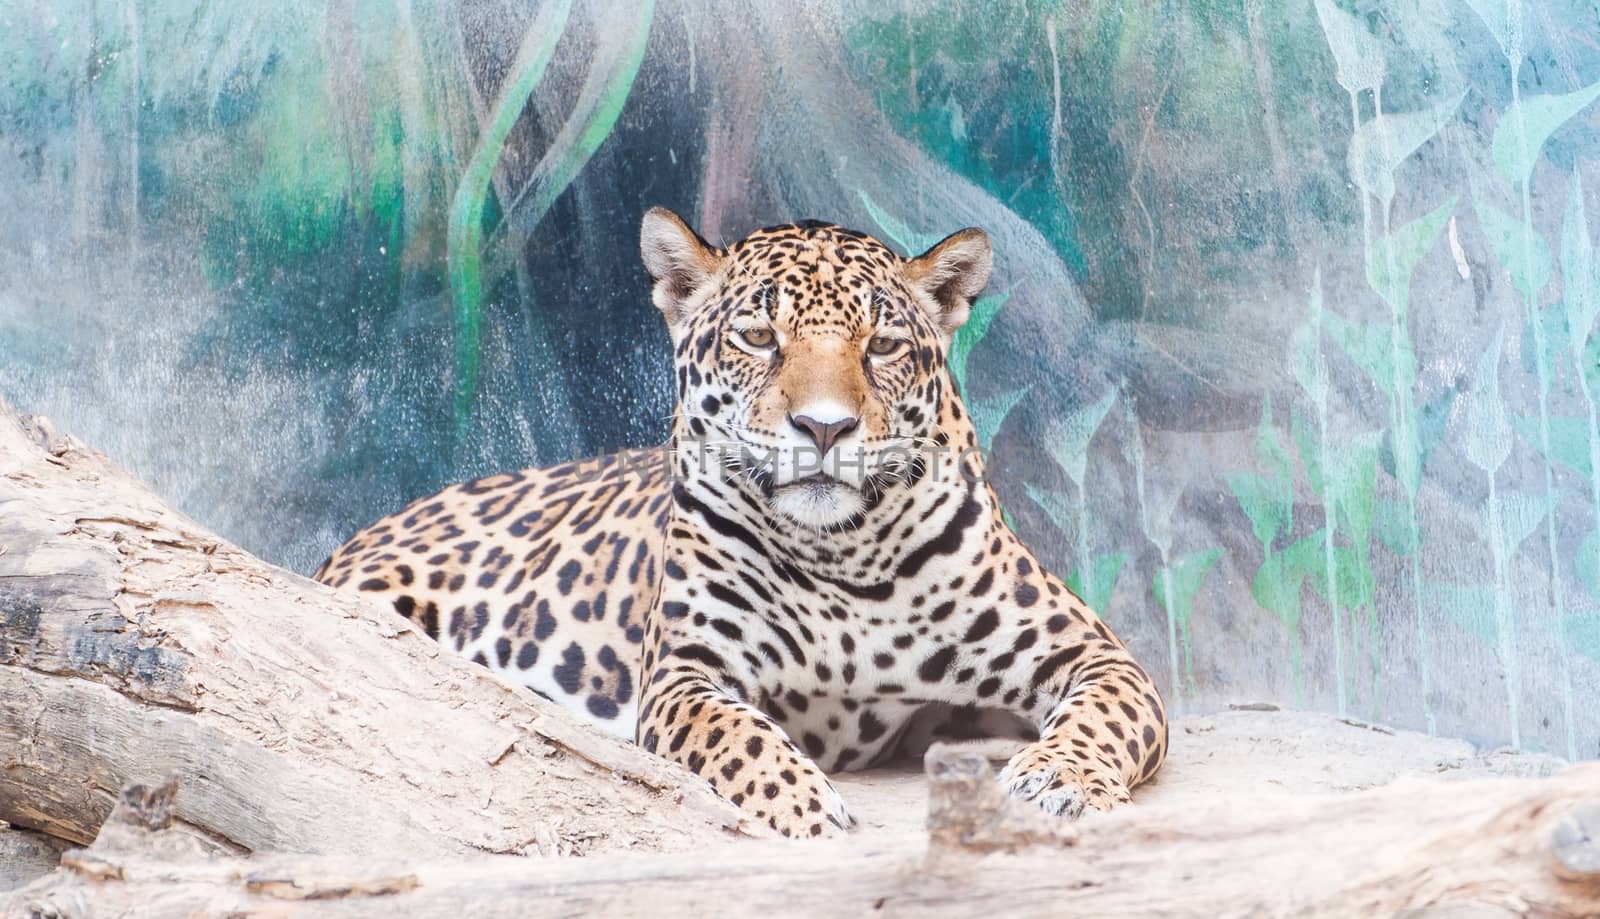 Staring of leopard by Sorapop